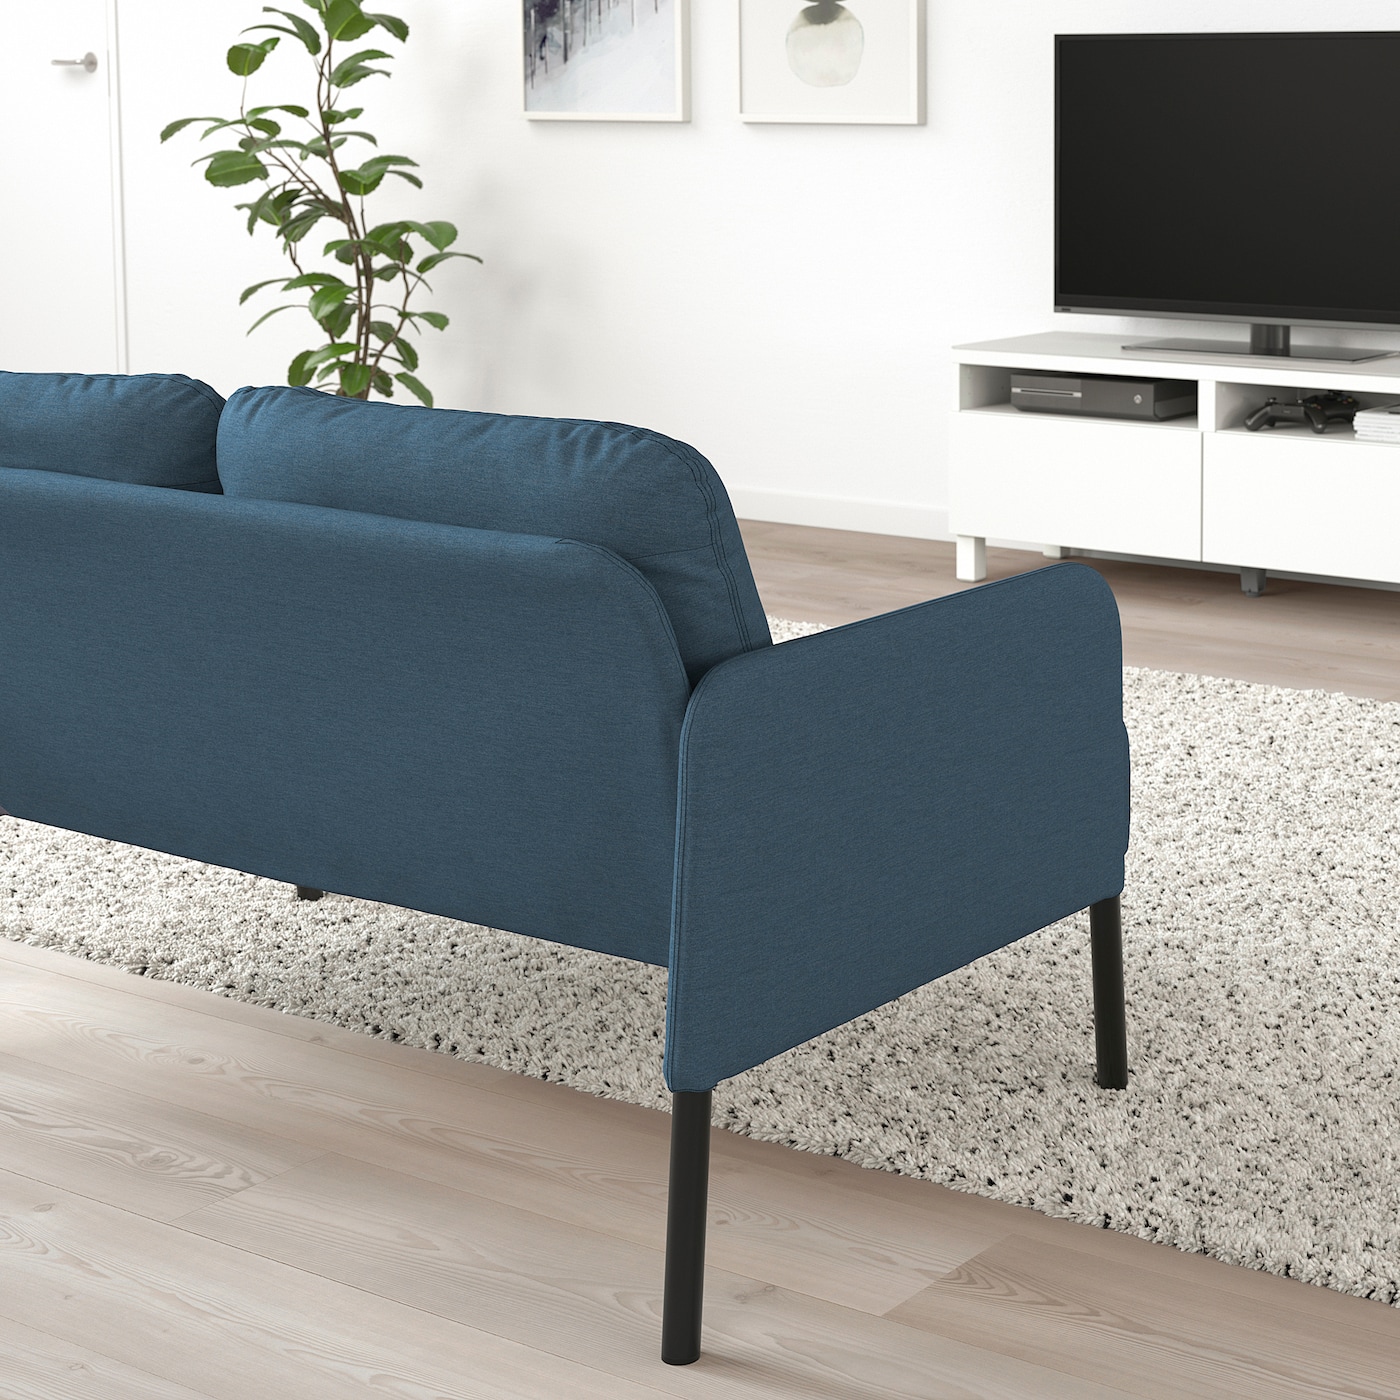 GLOSTAD 2-seat sofa Knisa medium blue - IKEA